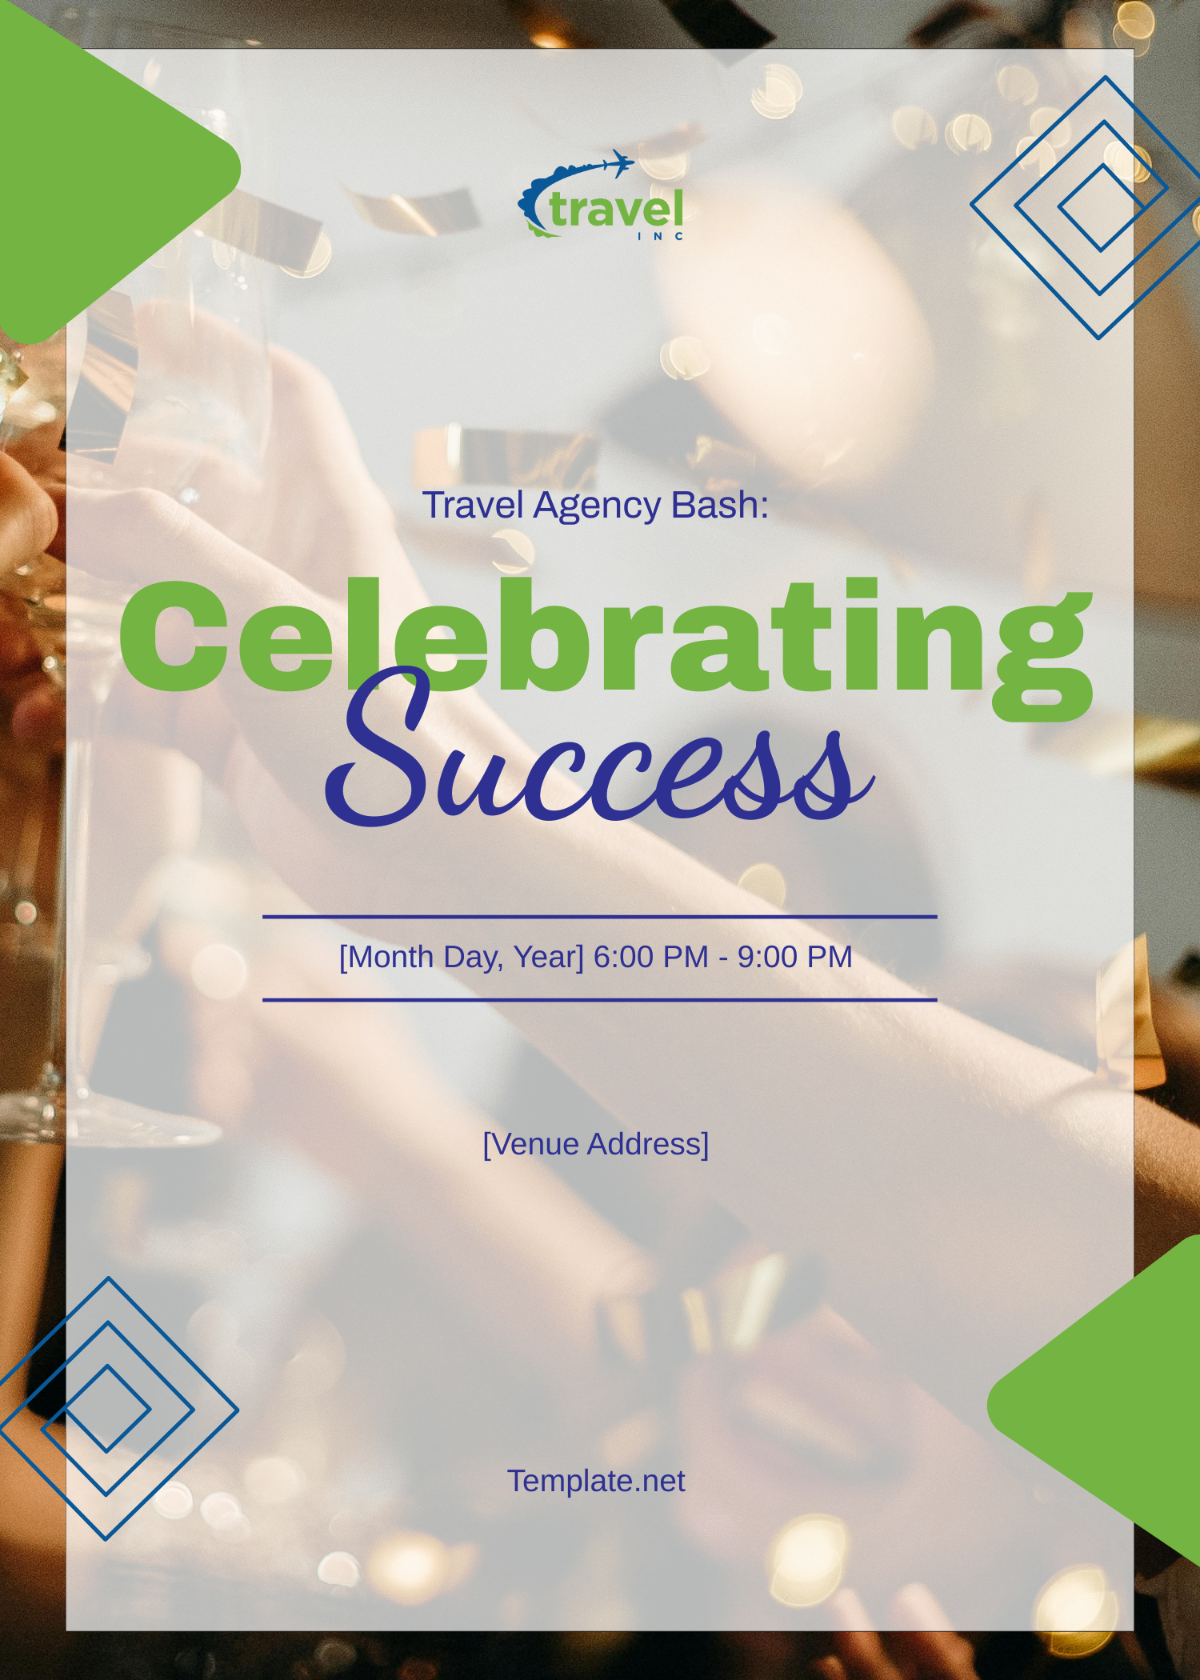 Travel Agency Party Invitation